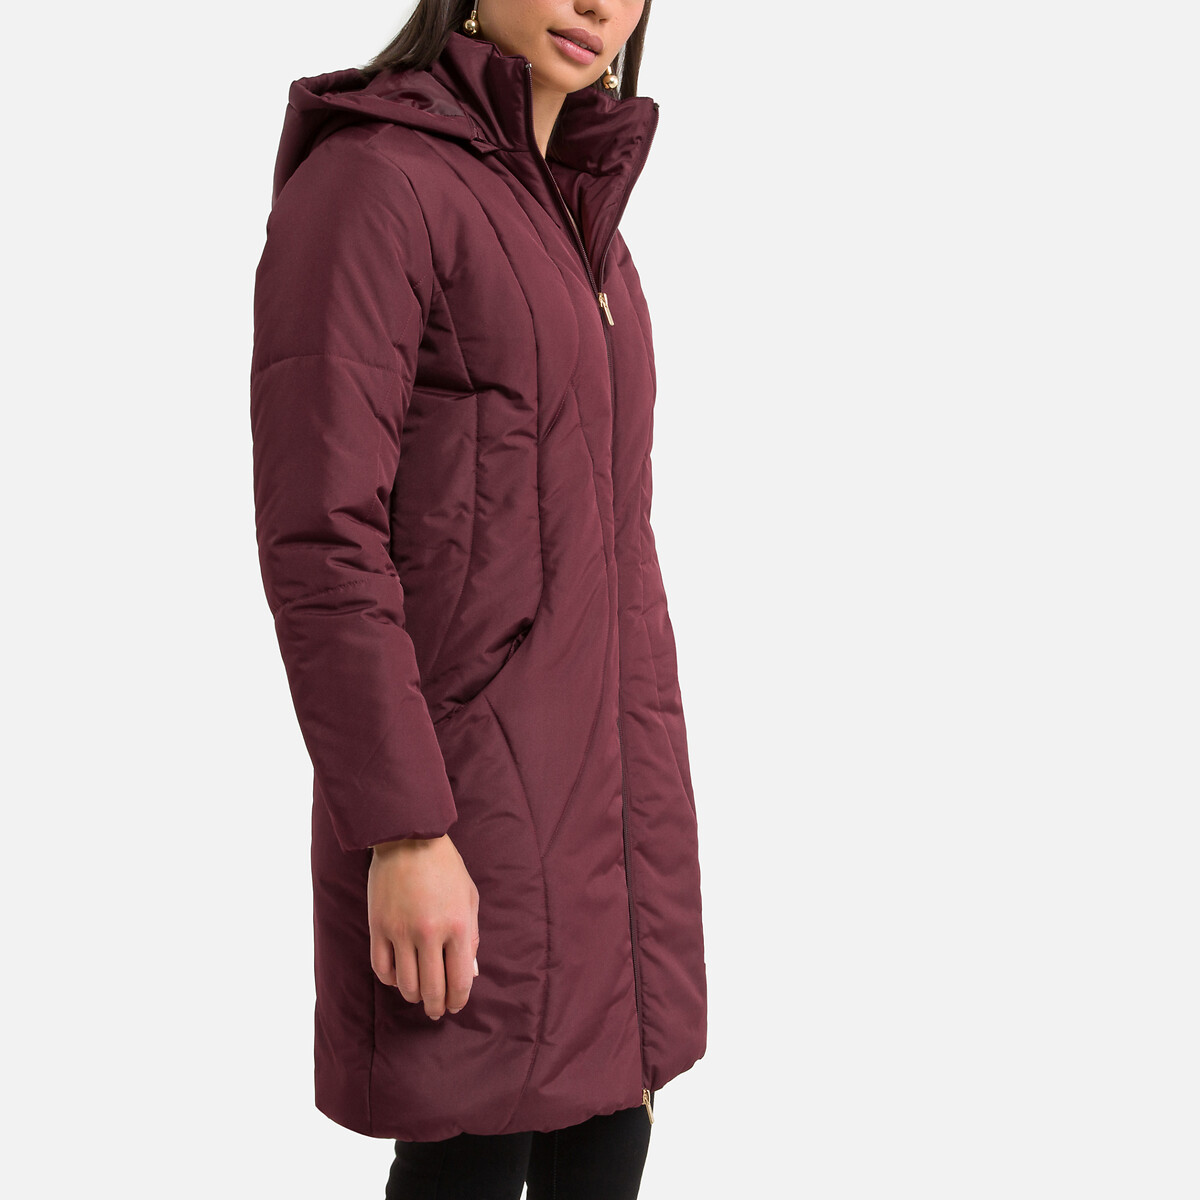 Куртка LaRedoute Стеганая средней длины с капюшоном зимняя модель 38 (FR) - 44 (RUS) розовый, размер 38 (FR) - 44 (RUS)